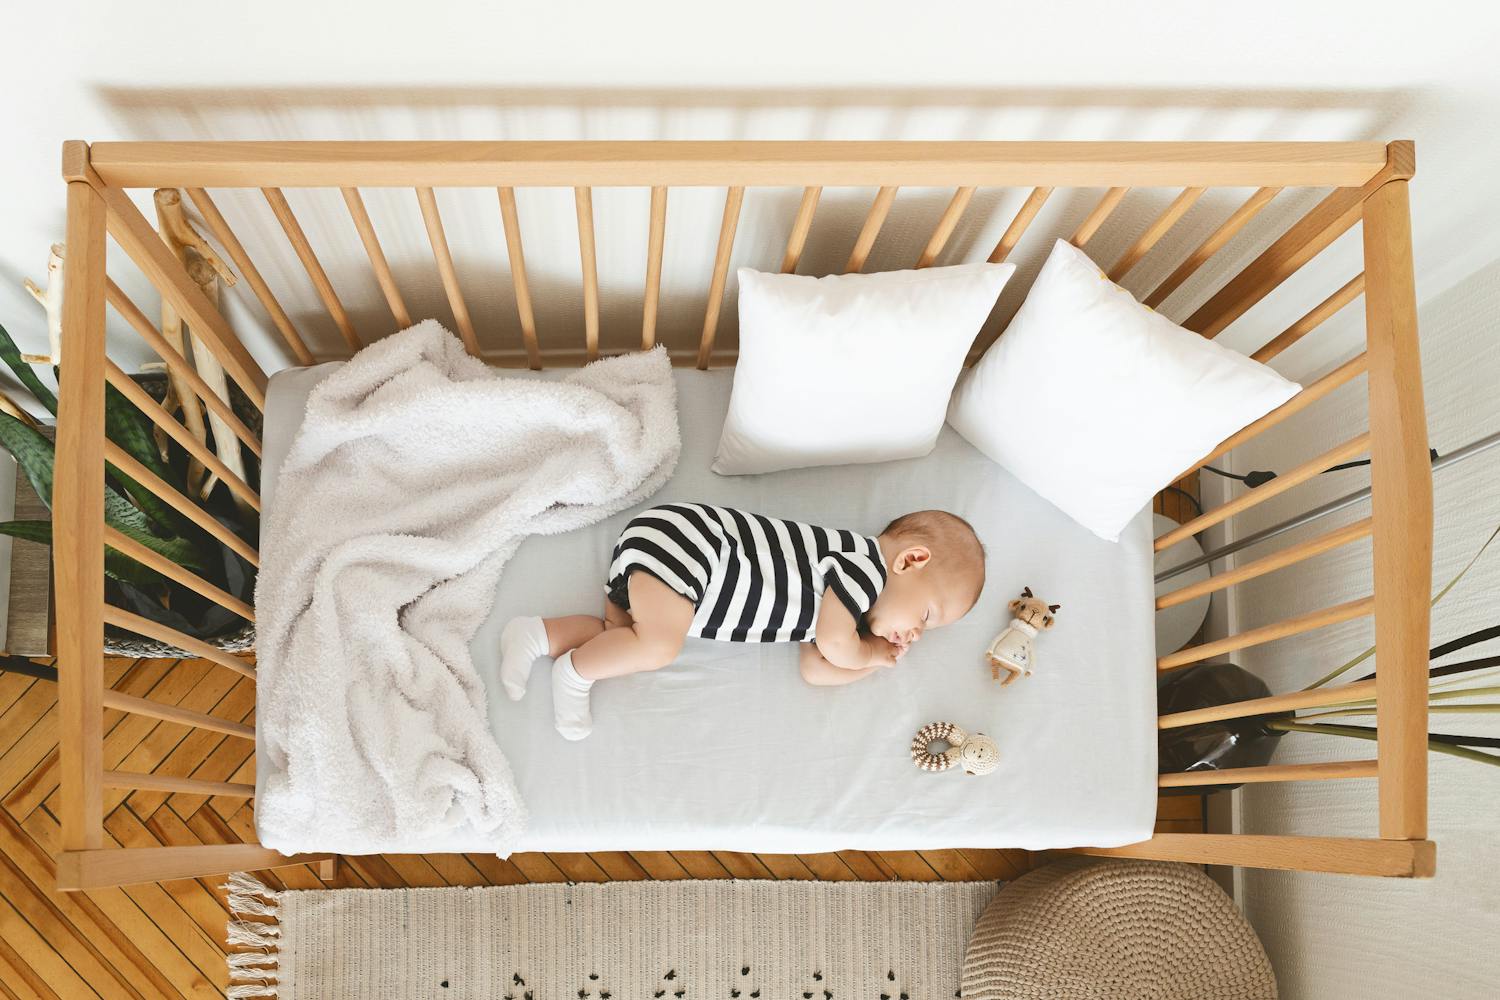 Mort inattendue du nourrisson : attention aux images de bébés endormis sur les réseaux sociaux